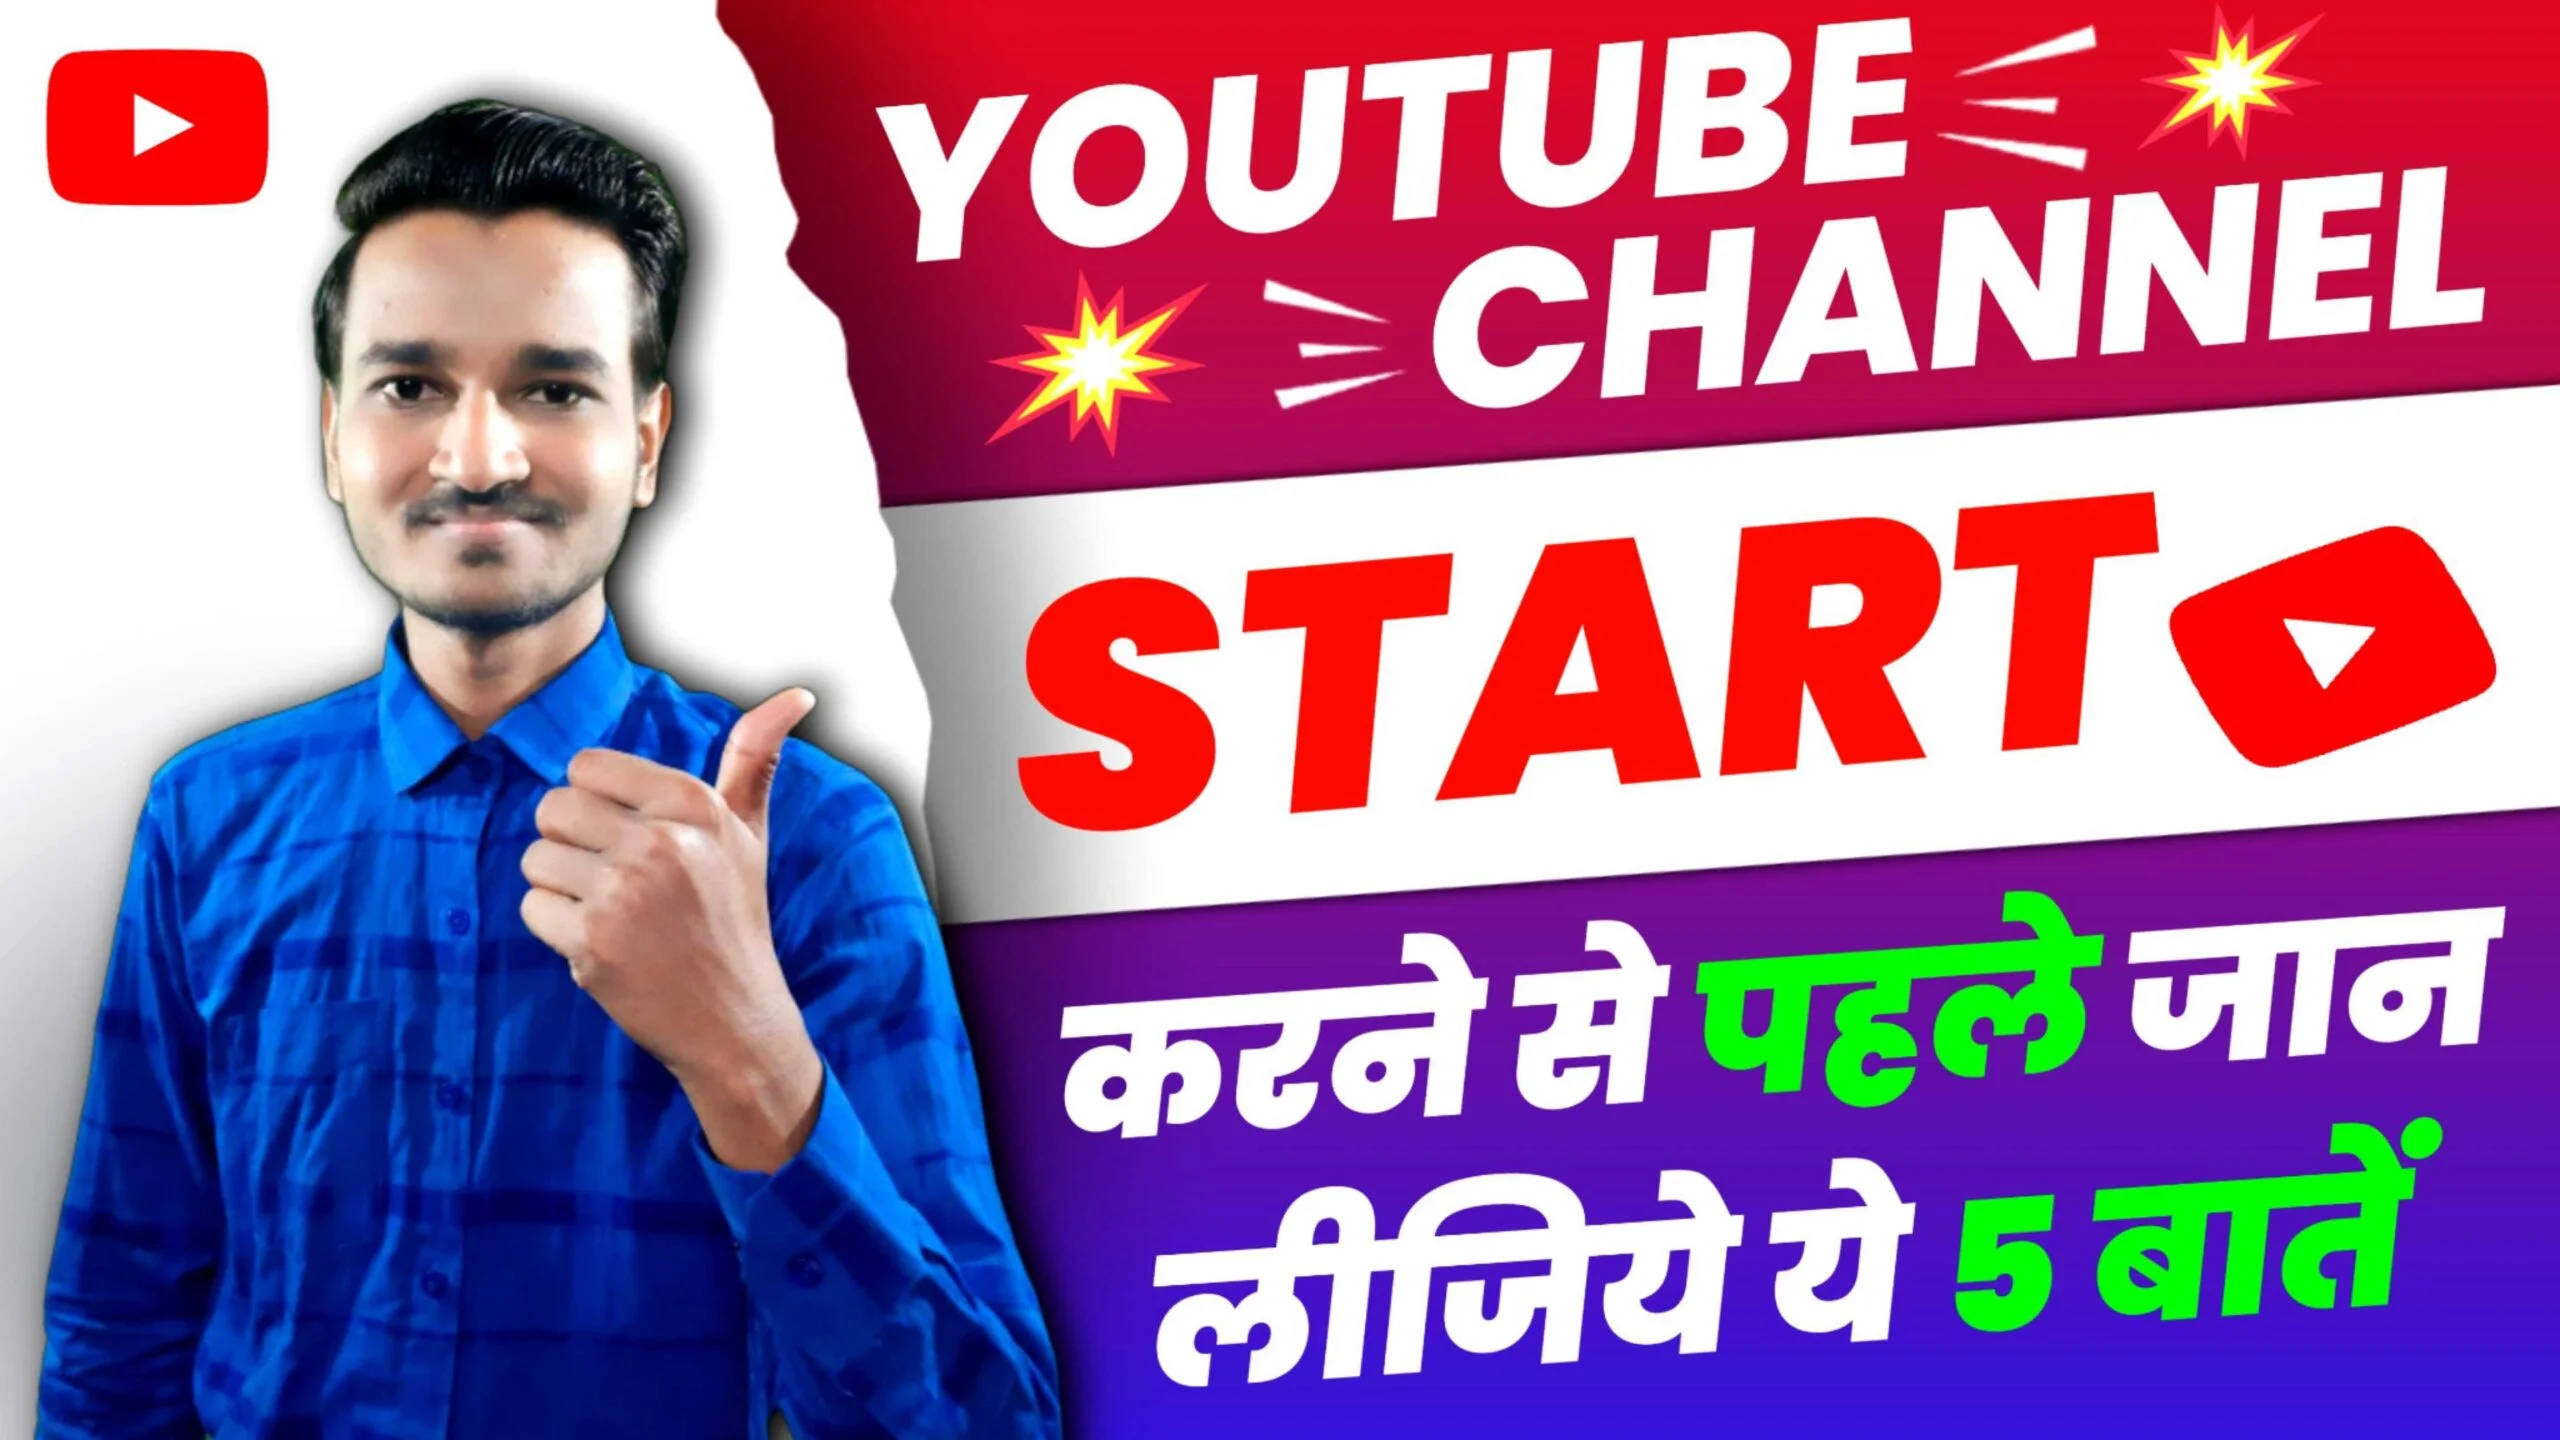 youtube tips in hindi